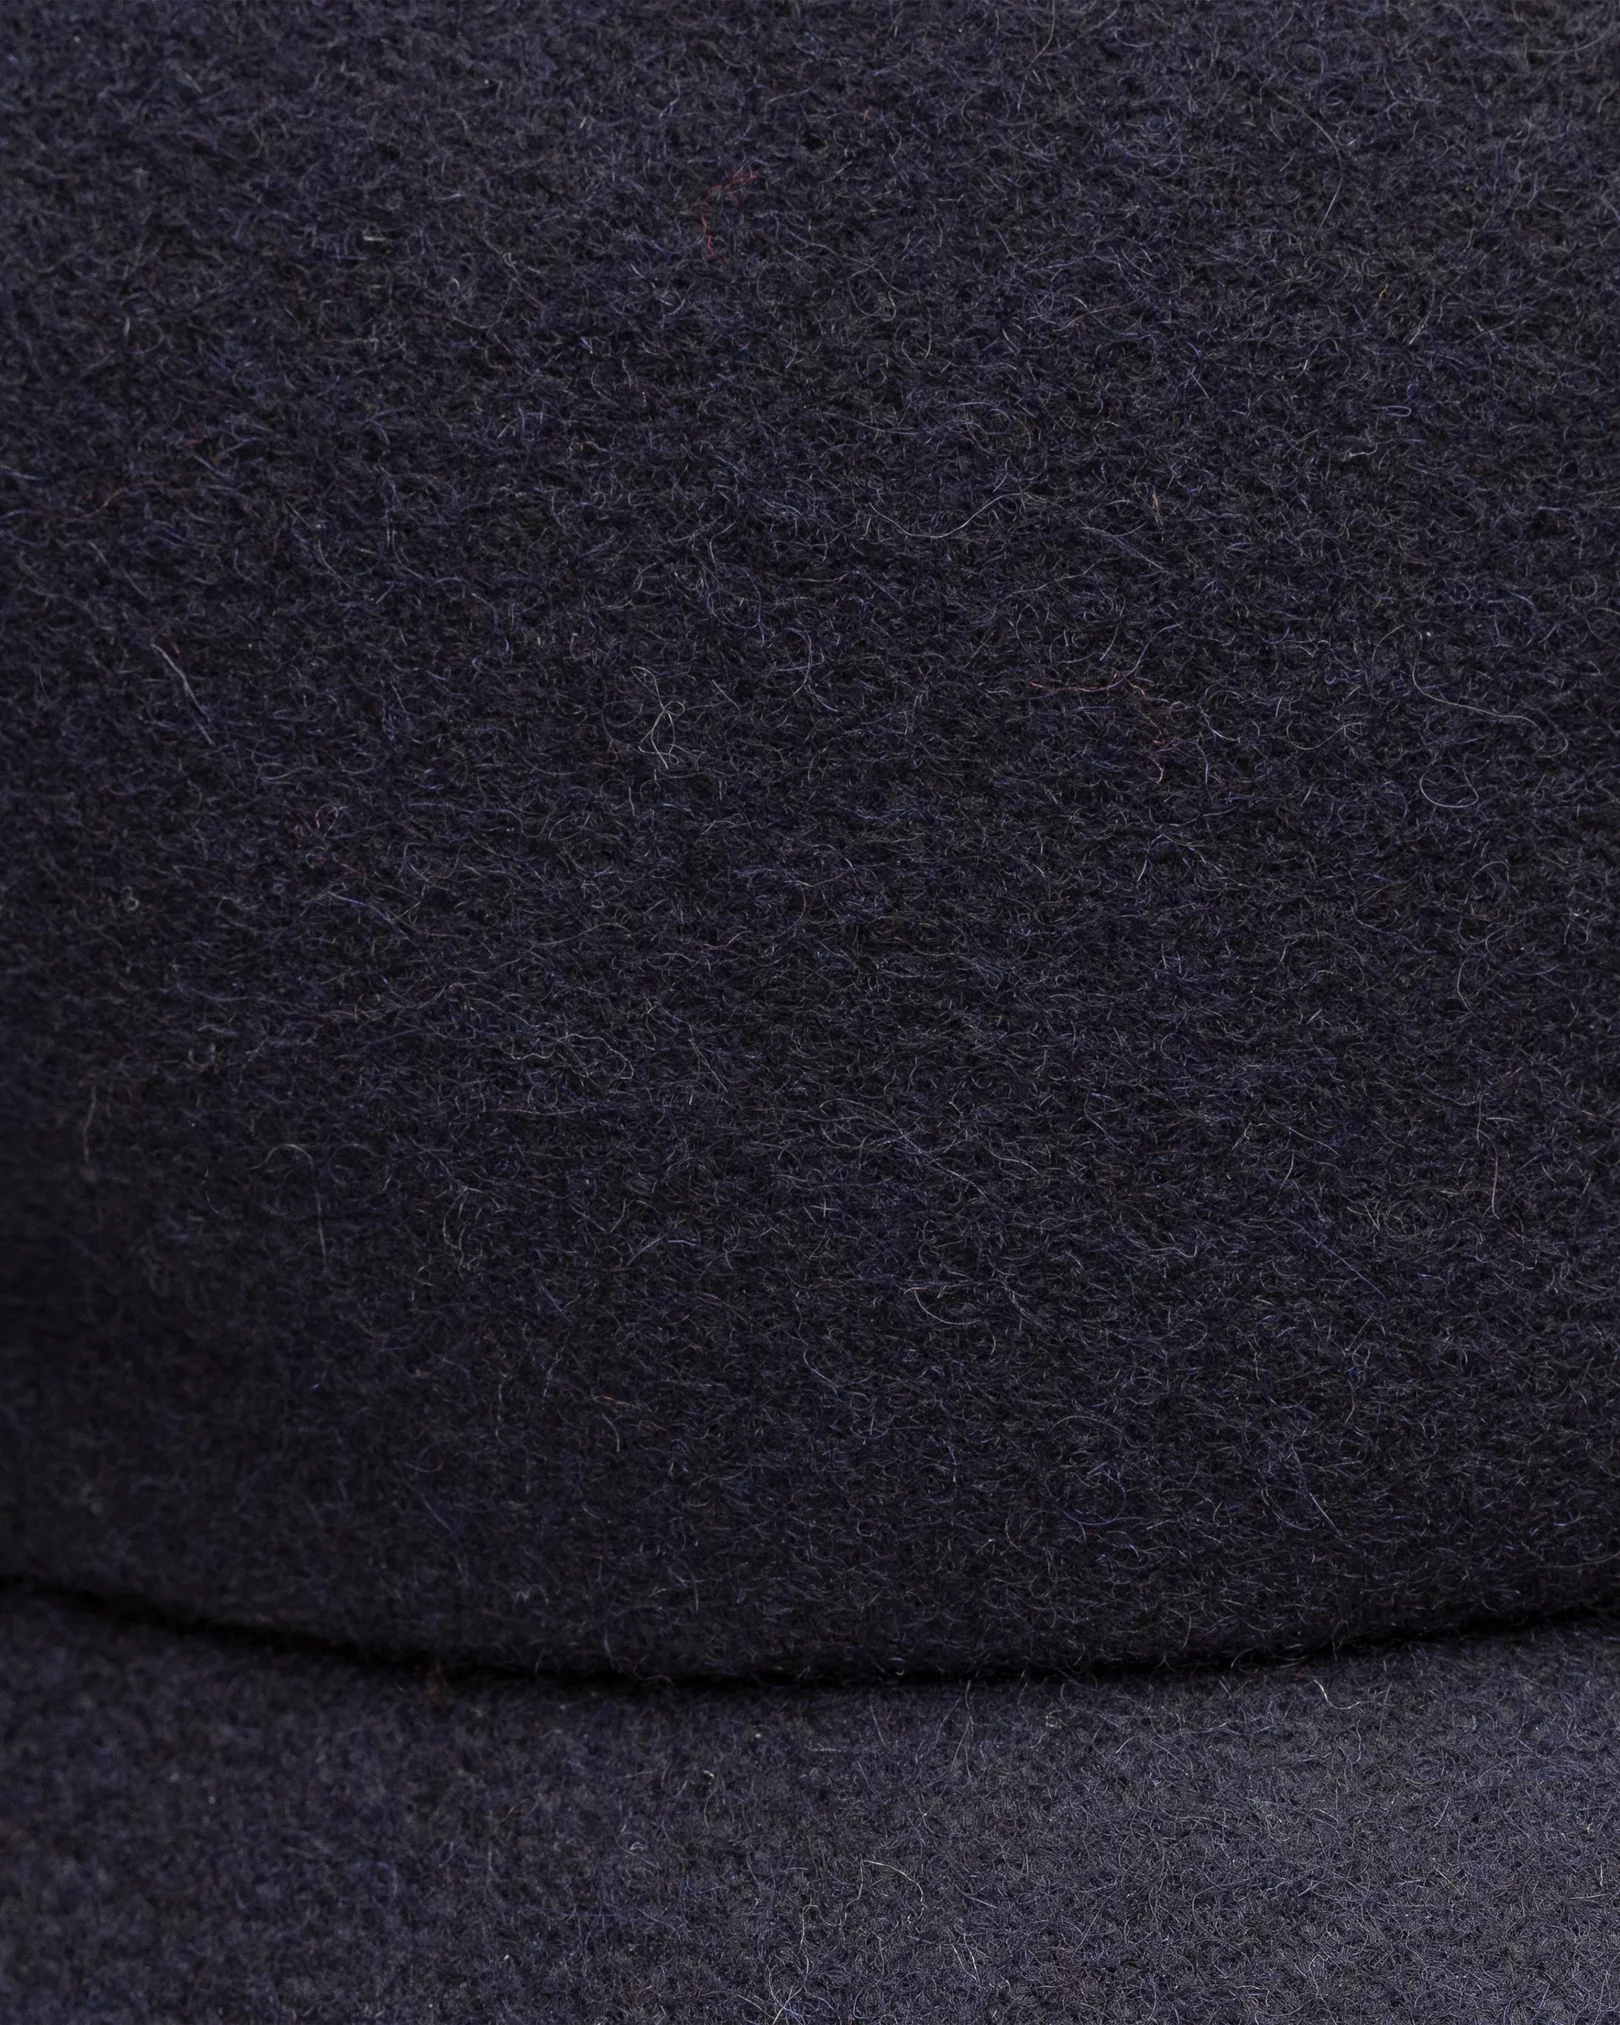 Eton - navy blue wool cap